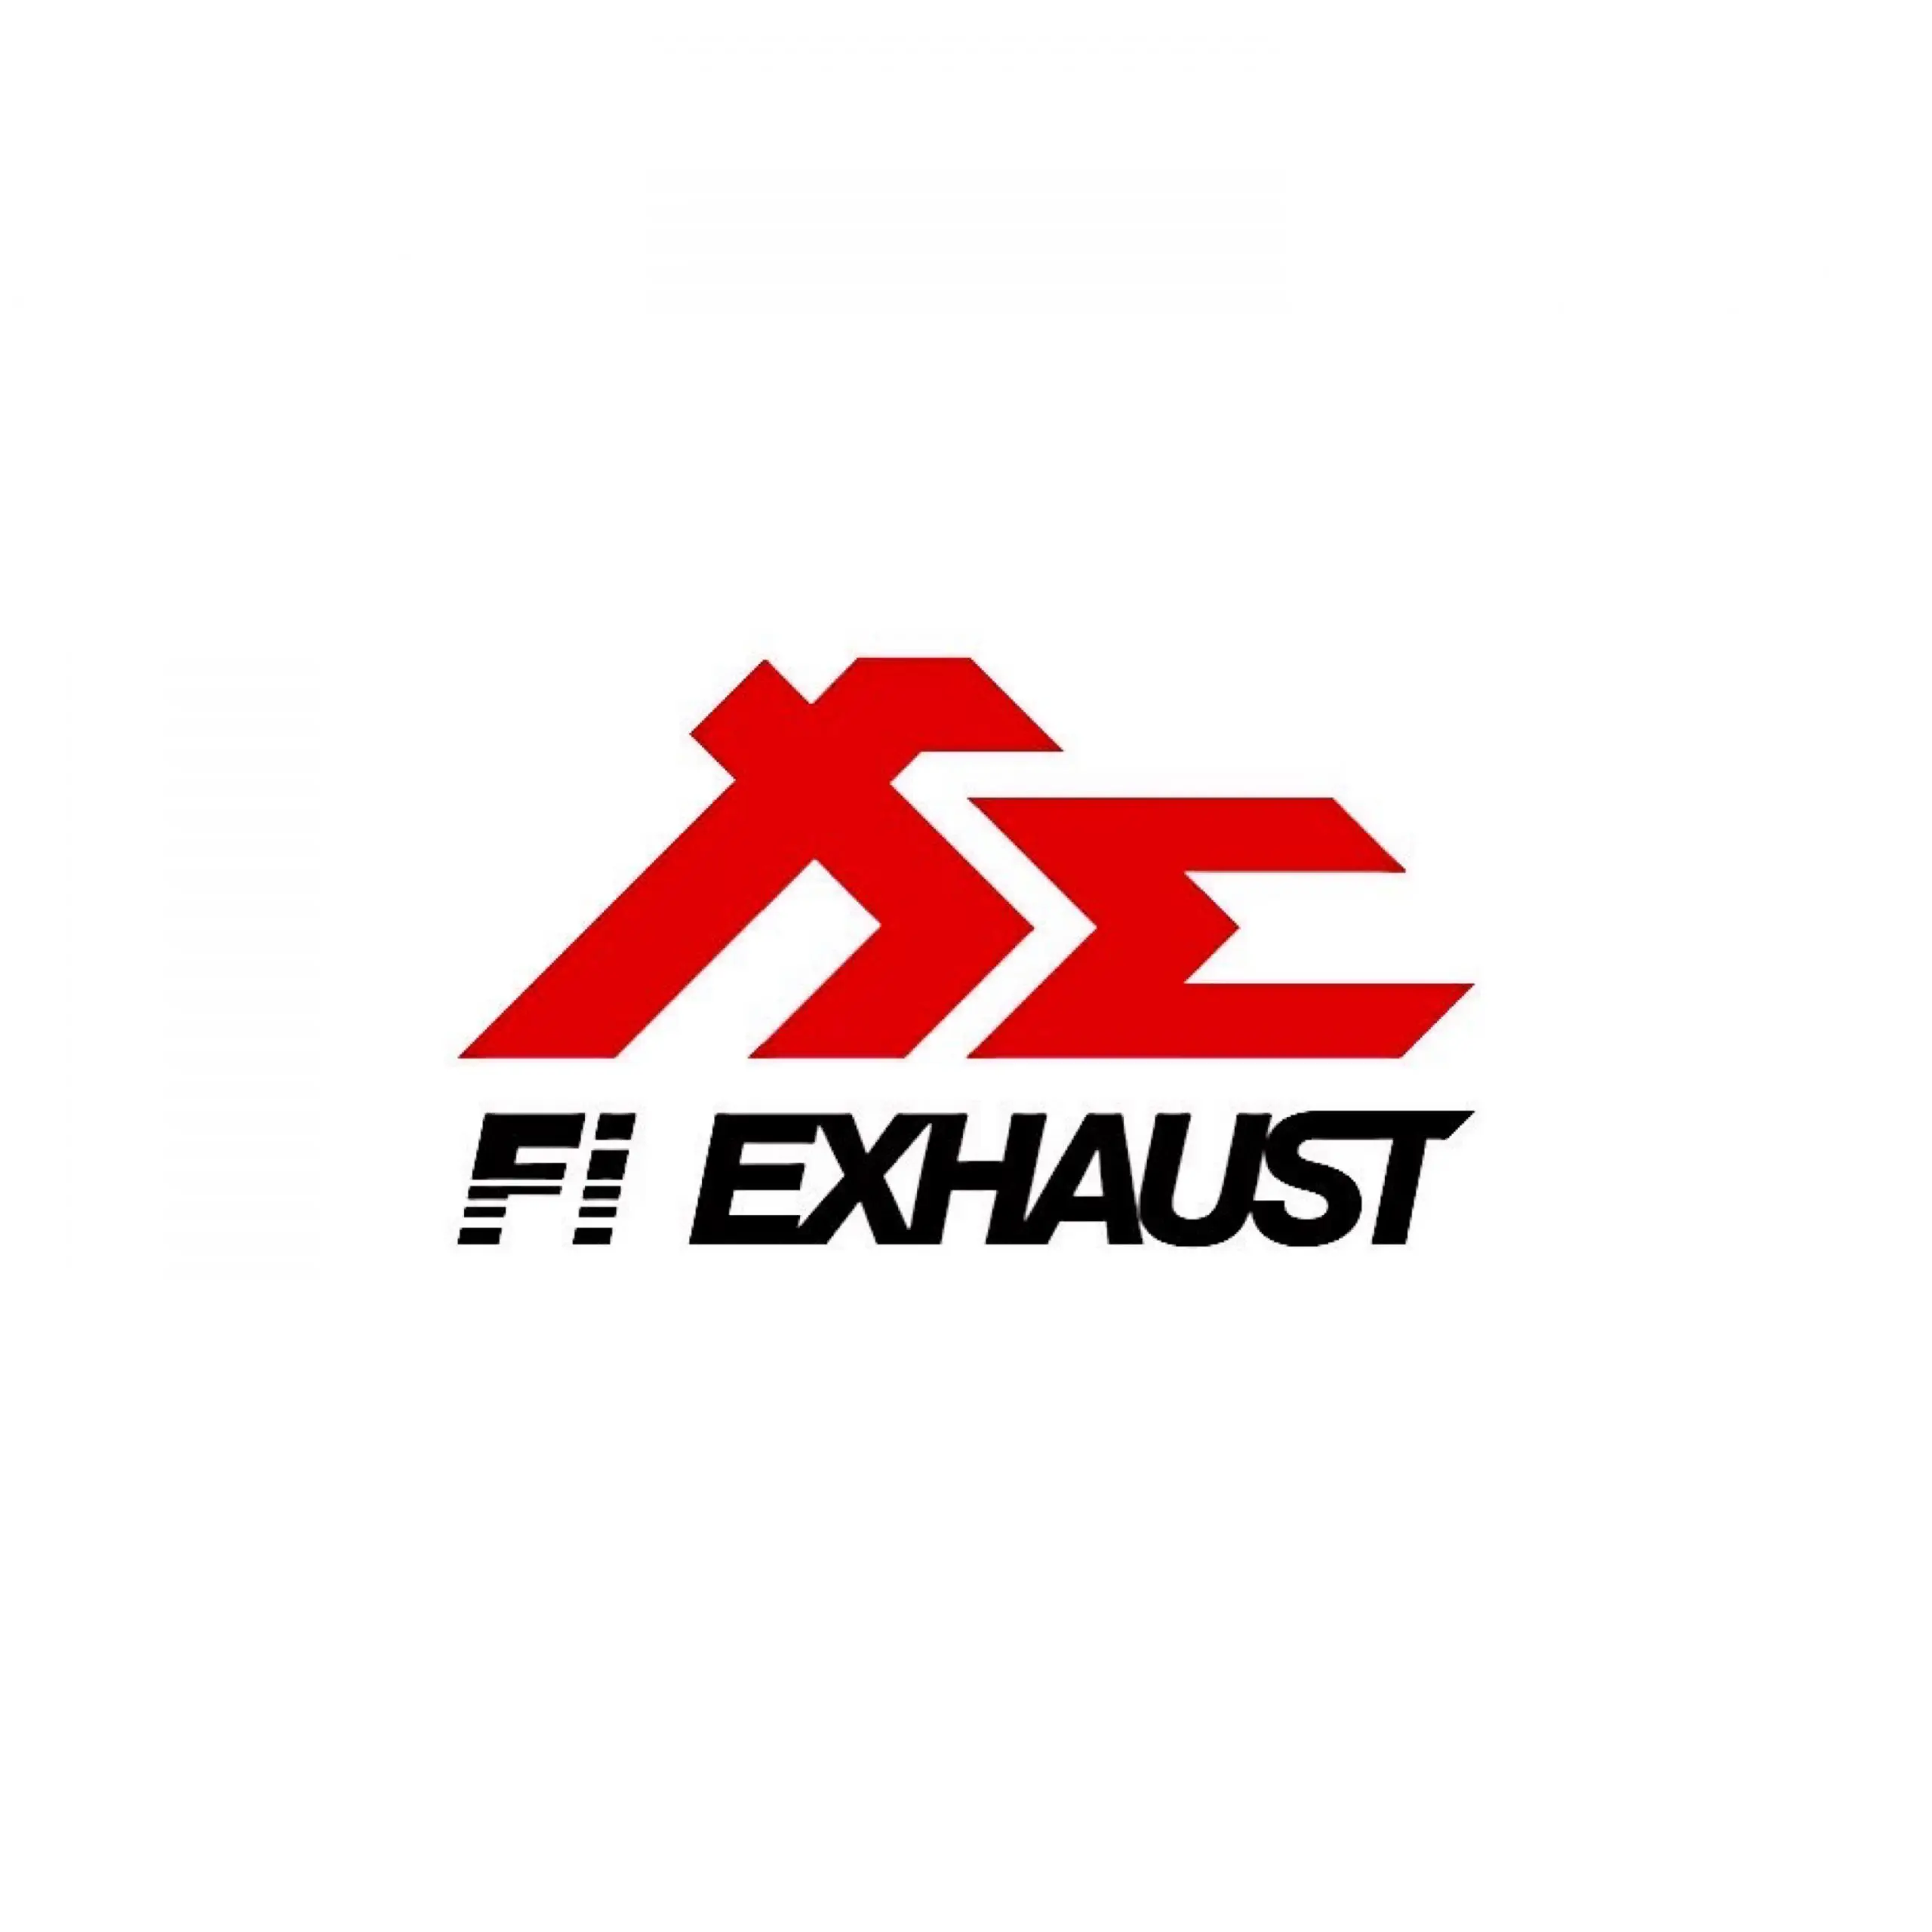 Fi Exhaust